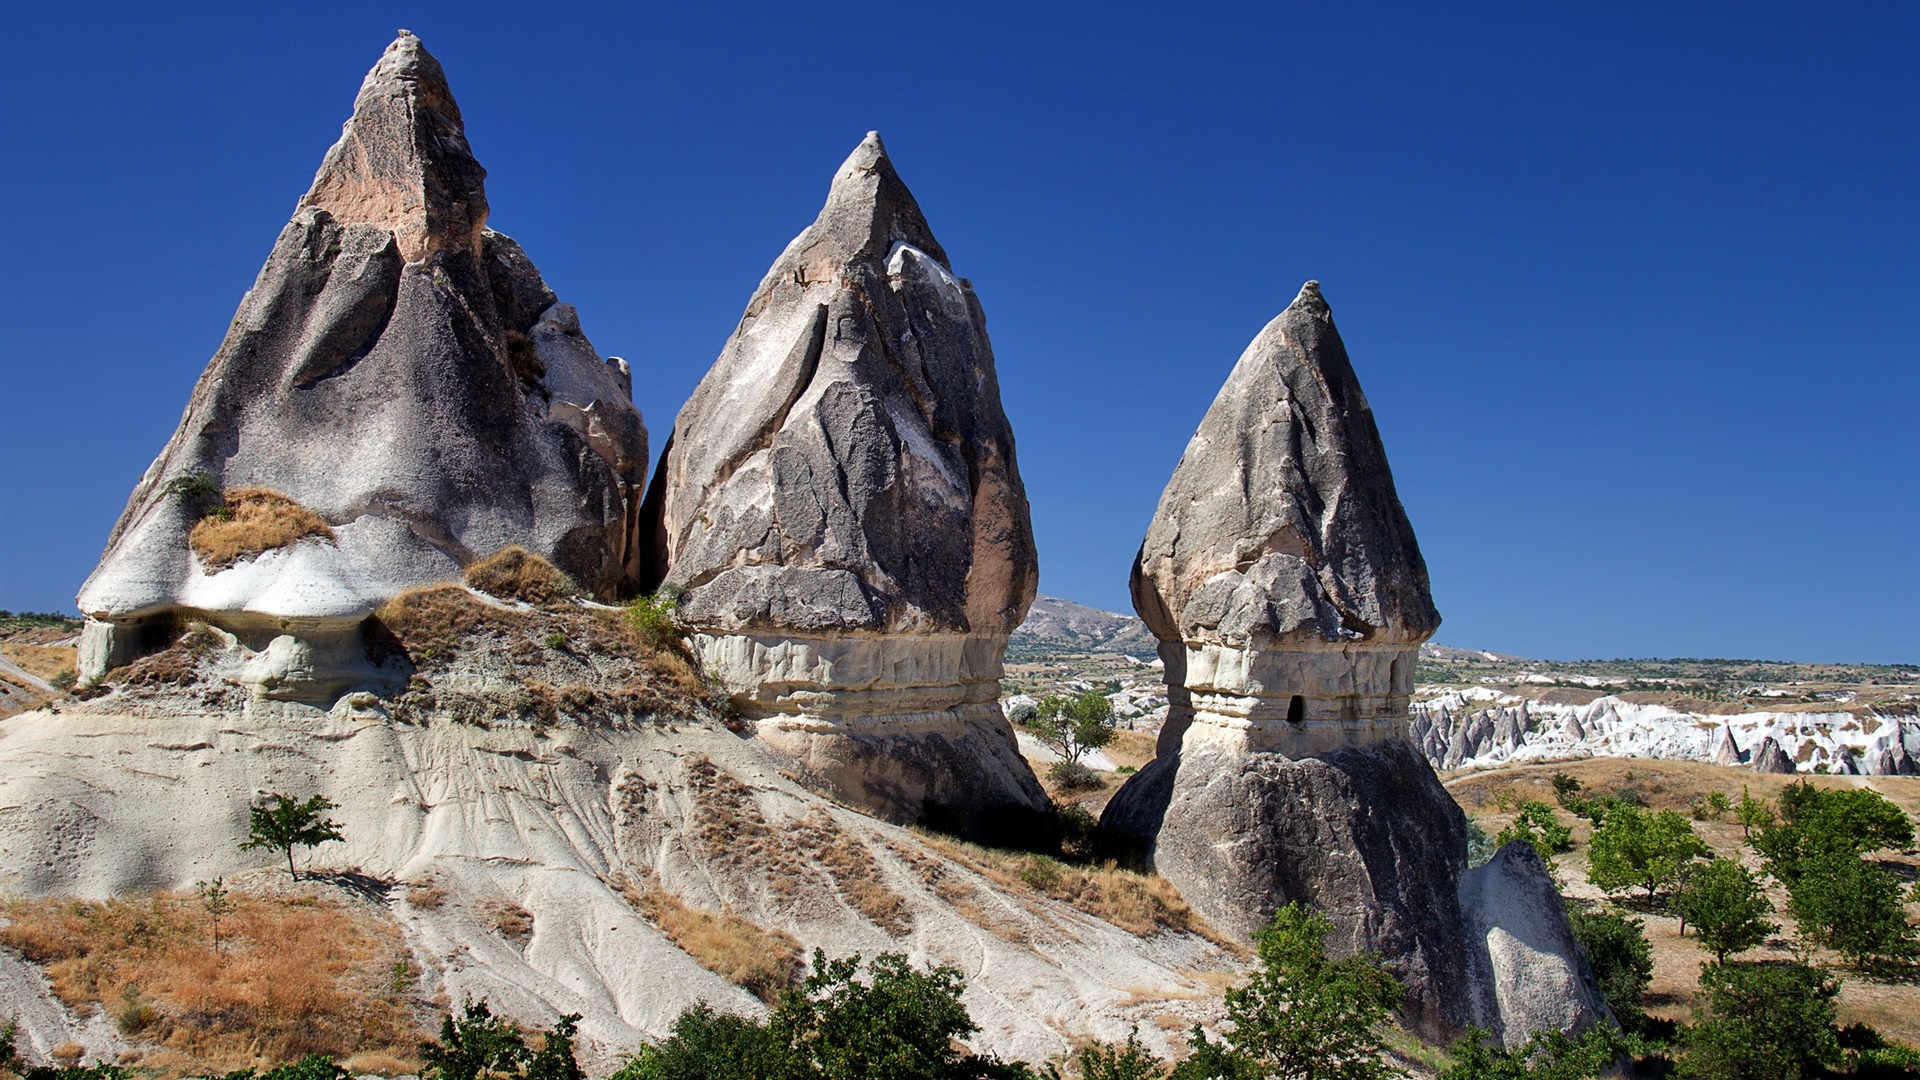 General 1920x1080 Turkey Cappadocia rocks nature sky blue clear sky sky plants landscape daylight Göreme